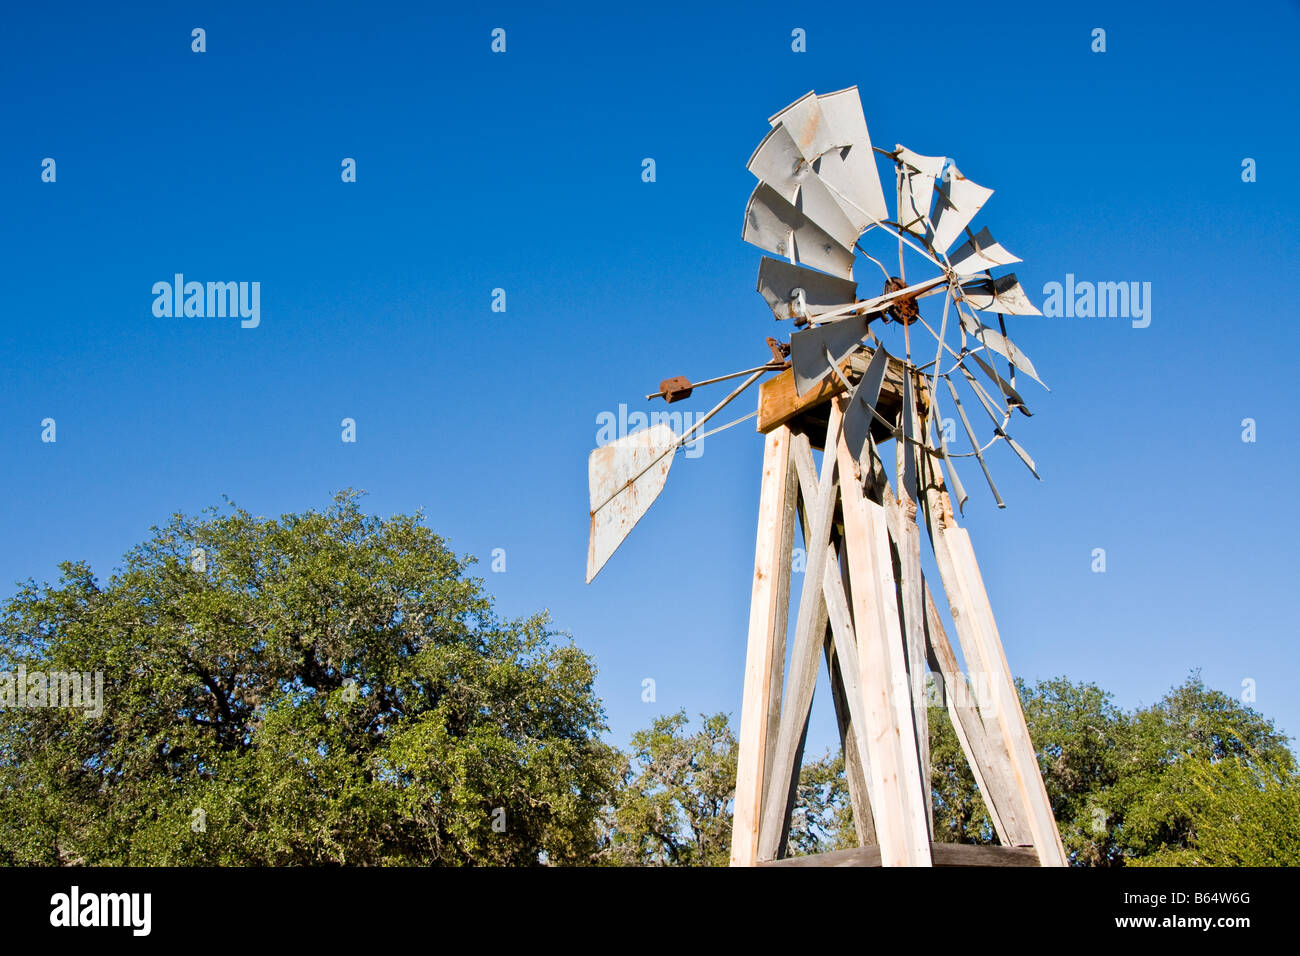 Texas Hill Country, Dixie dude ranch, moulin à vent pour pomper l'eau pour le bétail Banque D'Images